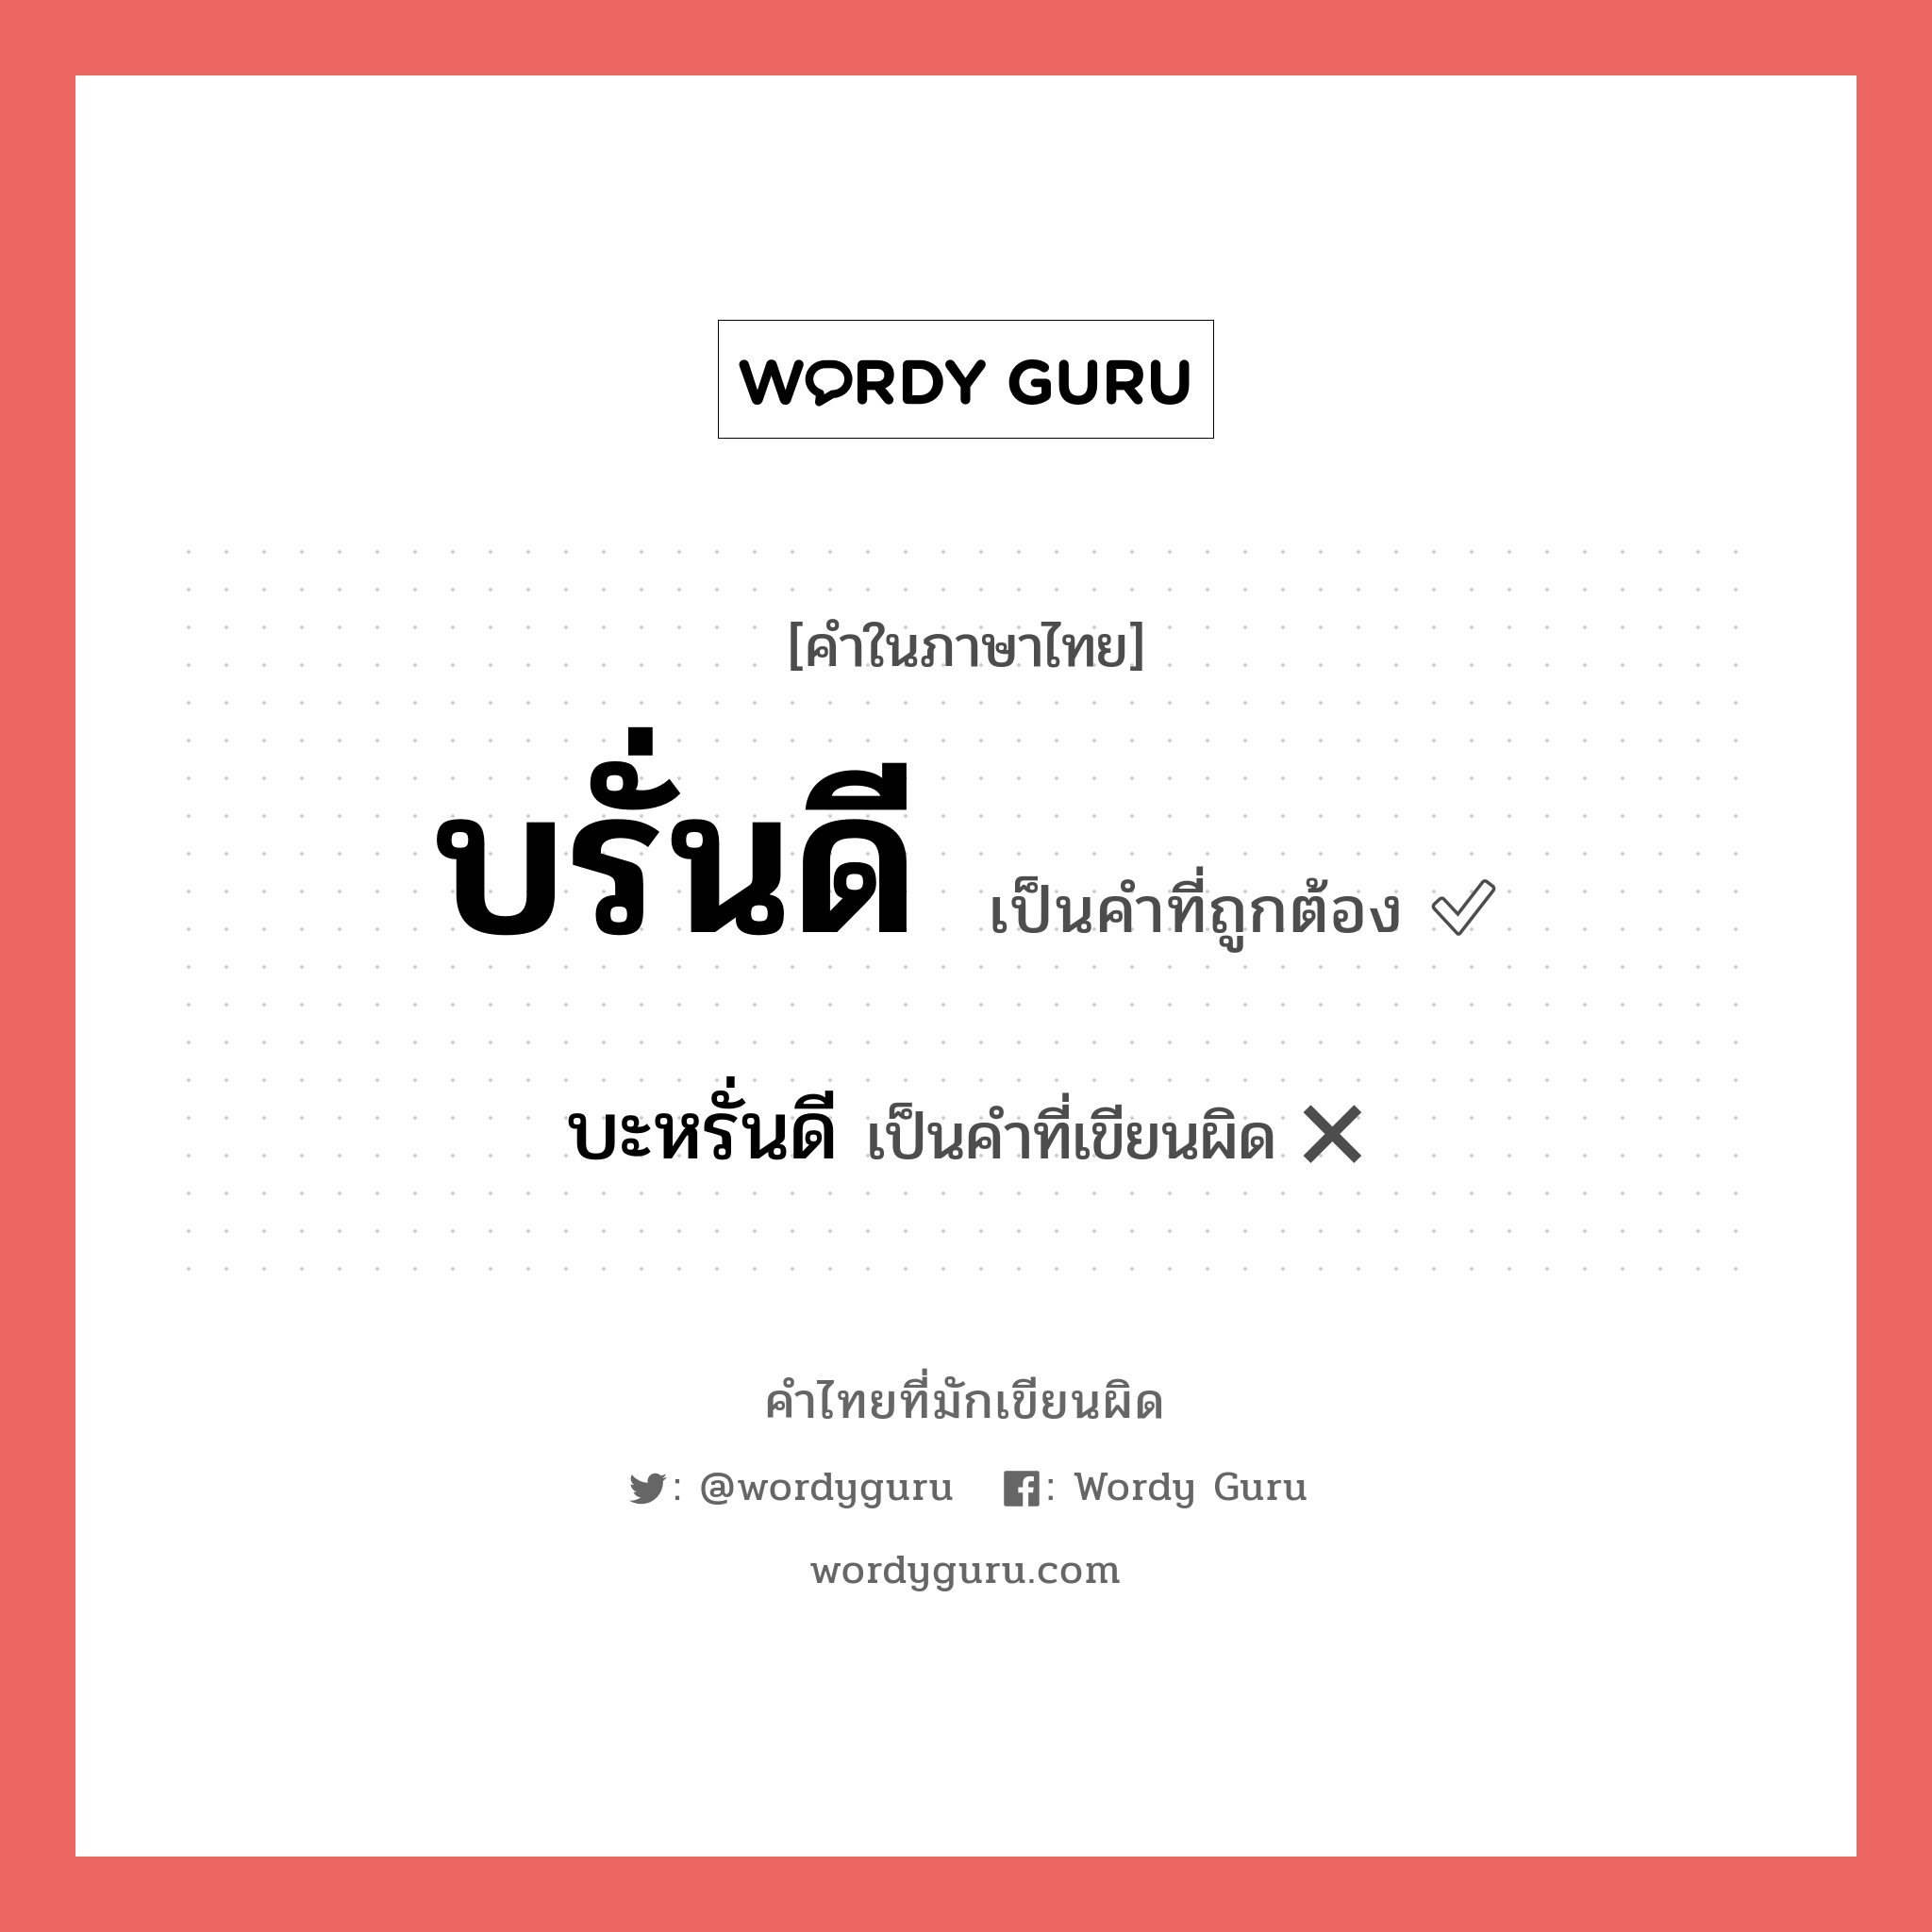 บะหรั่นดี หรือ บรั่นดี คำไหนเขียนถูก?, คำในภาษาไทยที่มักเขียนผิด บะหรั่นดี คำที่ผิด ❌ บรั่นดี